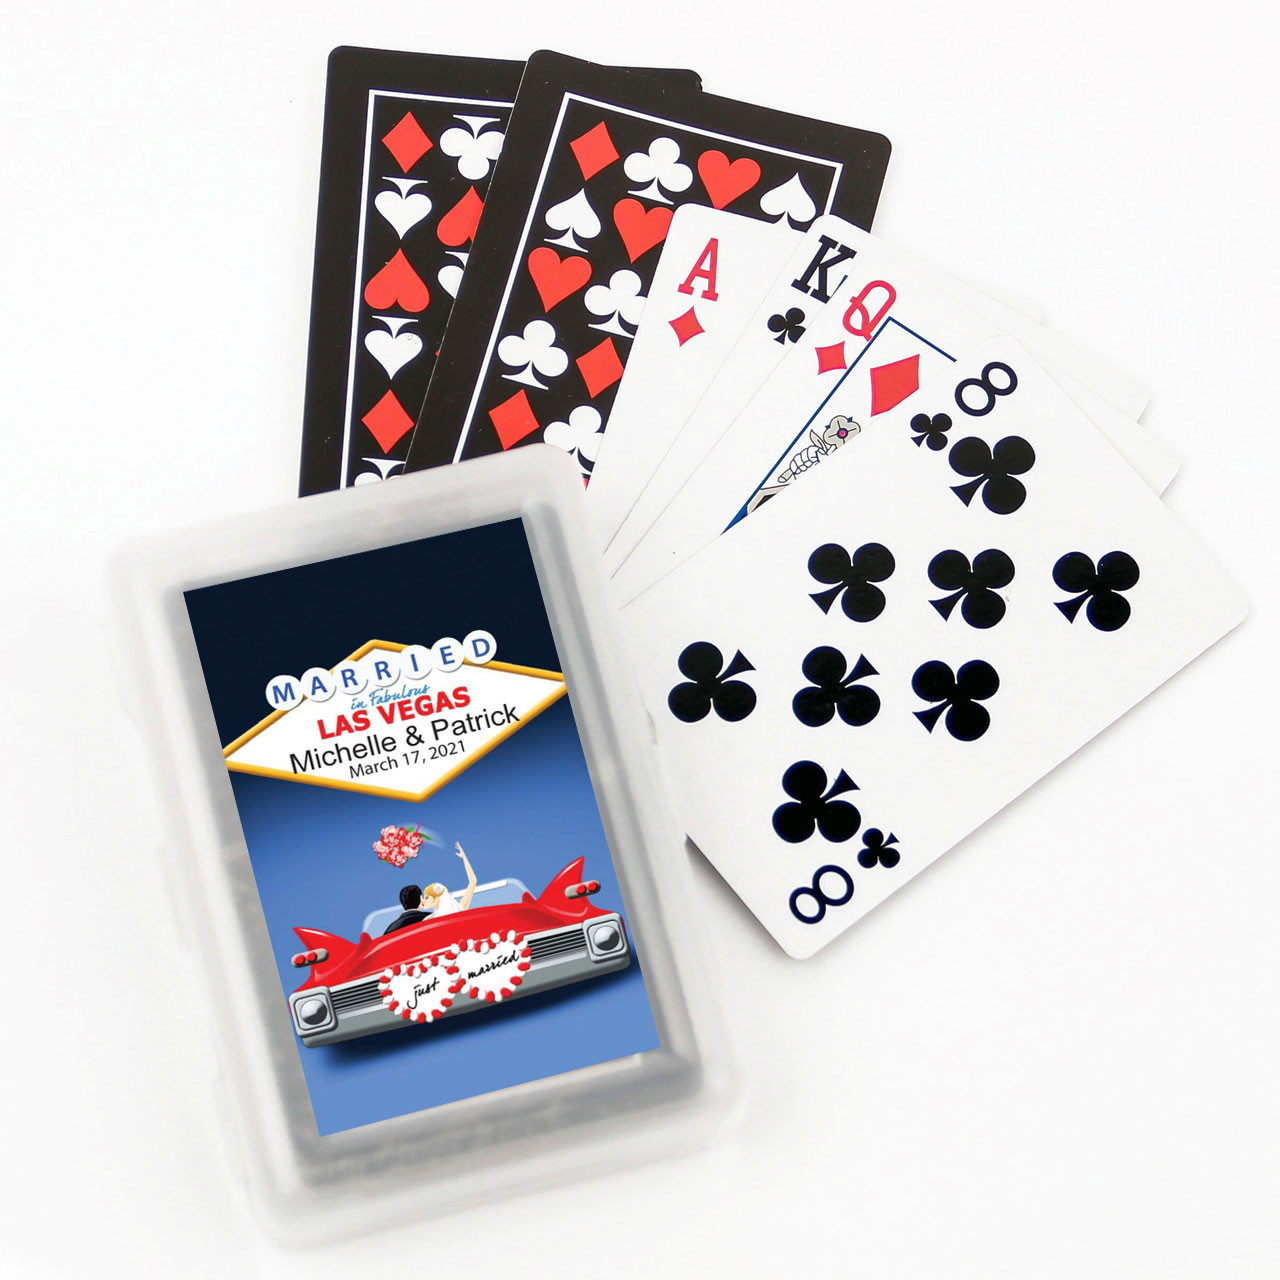 Vegas Playing Cards